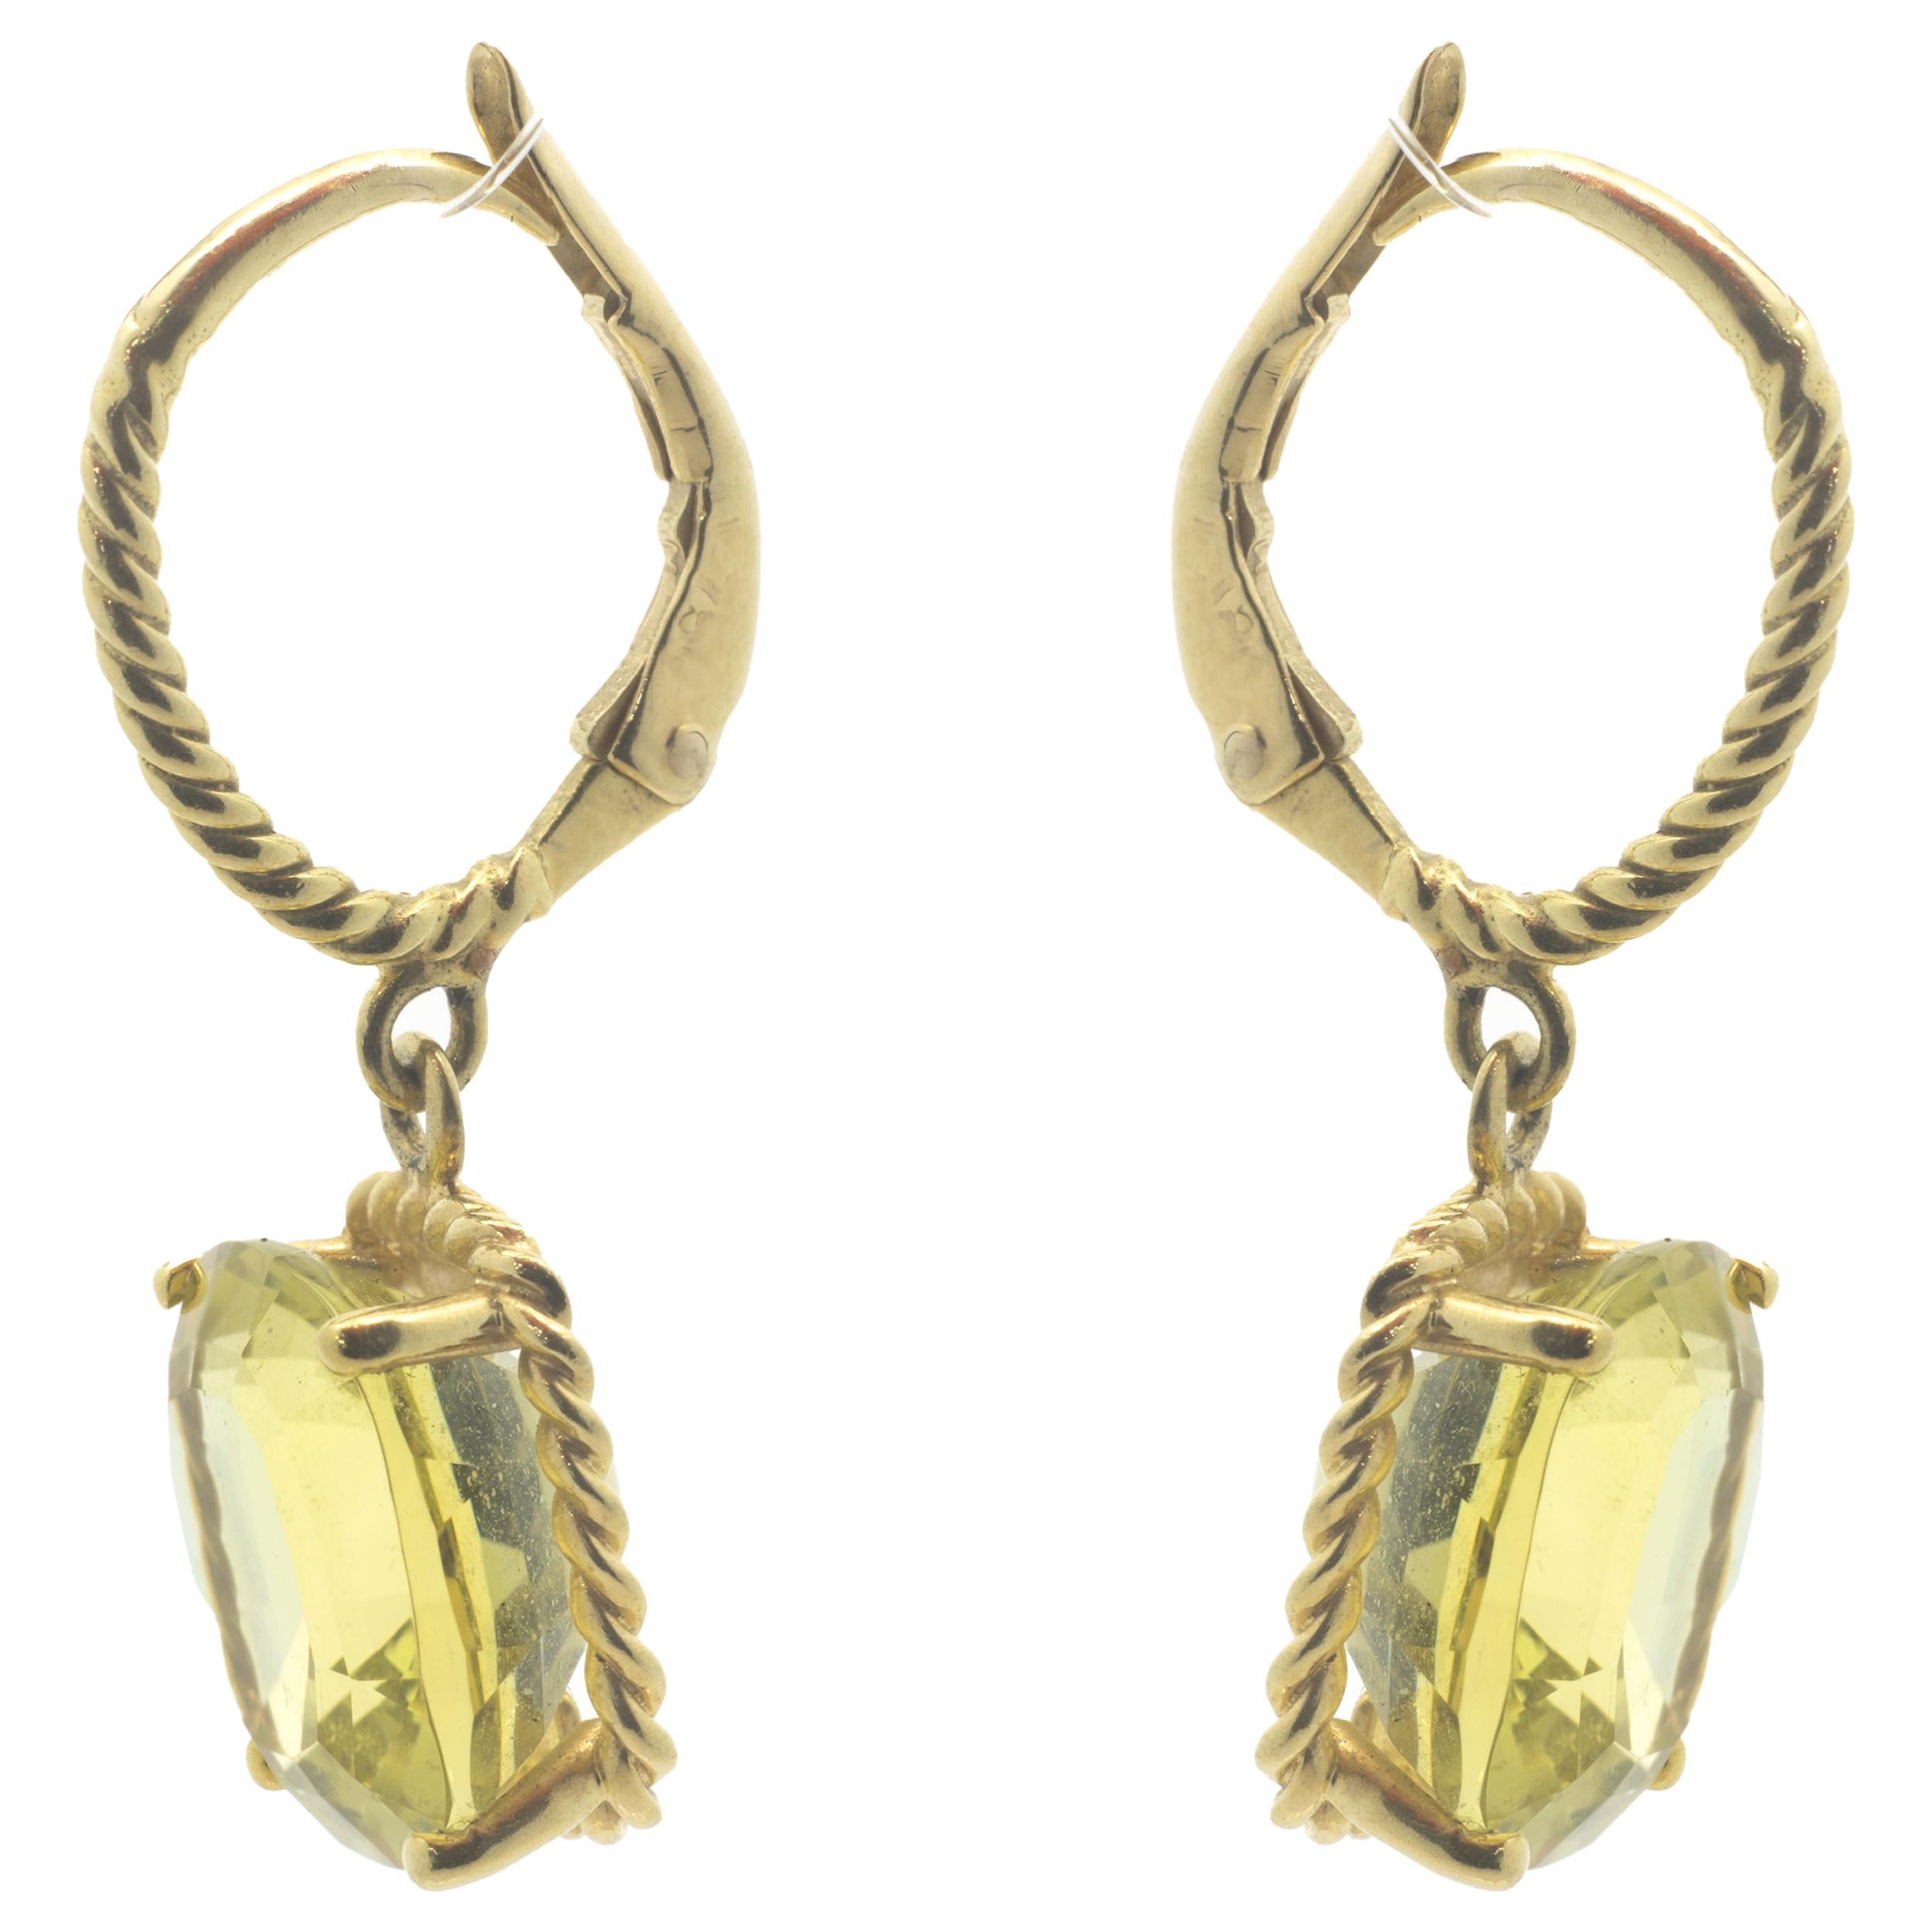 Designer: Vera Wang
Material: 18k yellow gold 
Dimensions: earrings measure 29 X 11.50mm 
Weight: 5.29 grams
